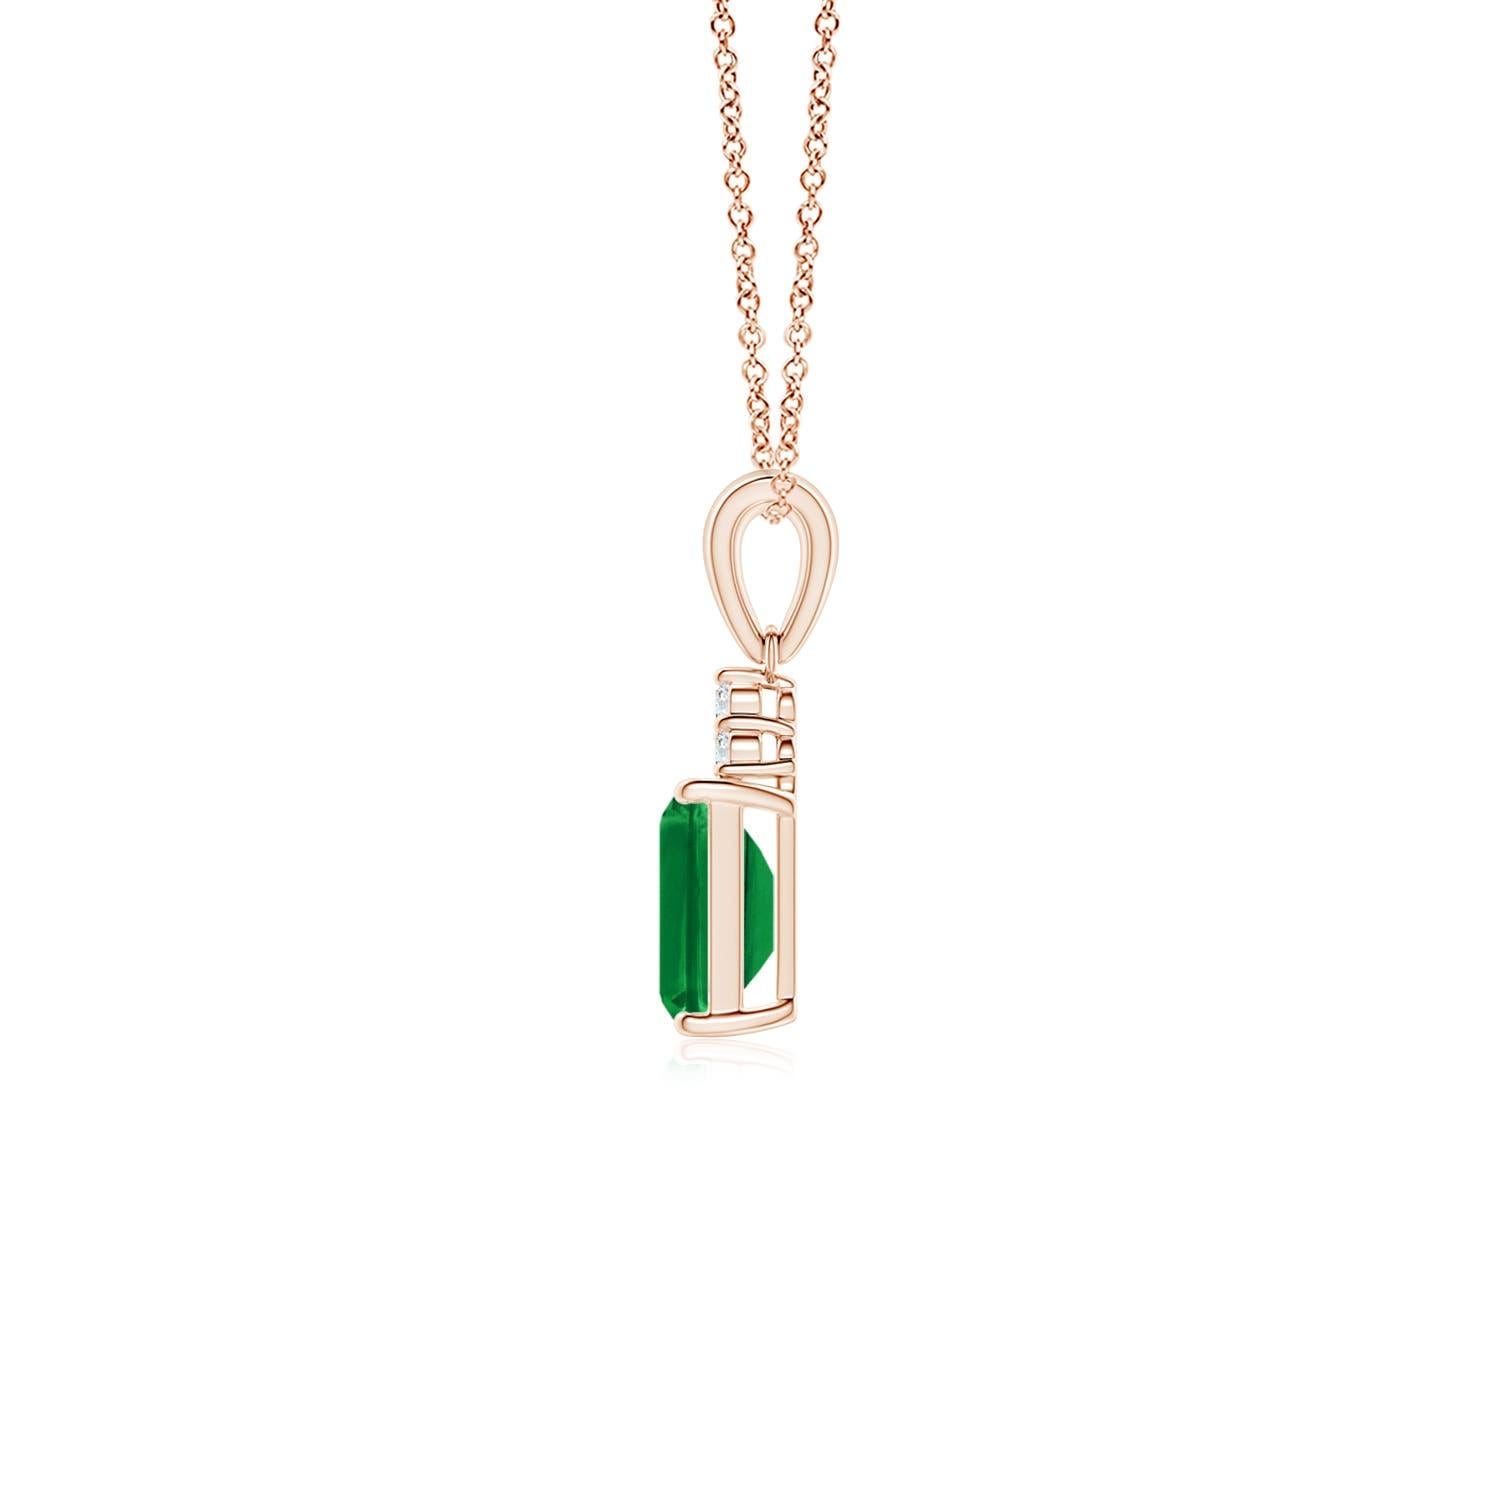 Ein atemberaubender Smaragd im Smaragdschliff sitzt hübsch in einer Vier-Zacken-Fassung, gekrönt von einem schimmernden Cluster aus Diamanten. Das satte Grün des Edelsteins wird durch die Brillanz der weißen Diamanten noch verstärkt. Dieser